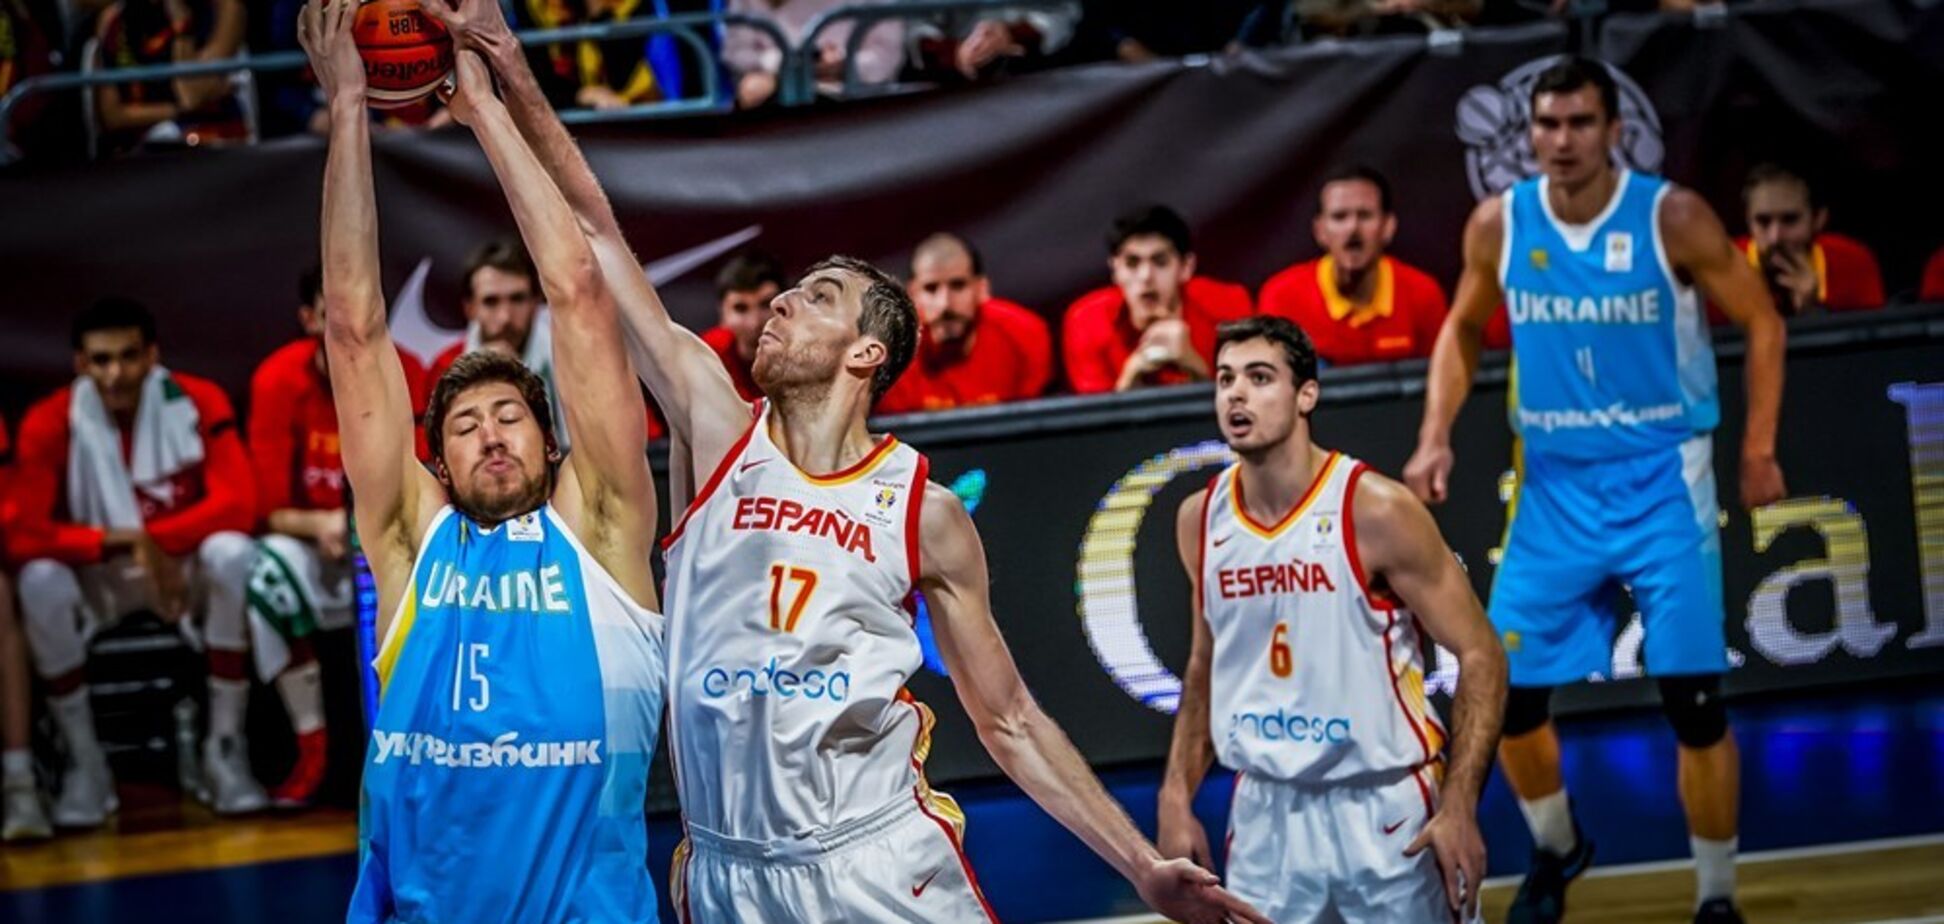 Сборная Украины дала бой Испании в отборе КМ по баскетболу